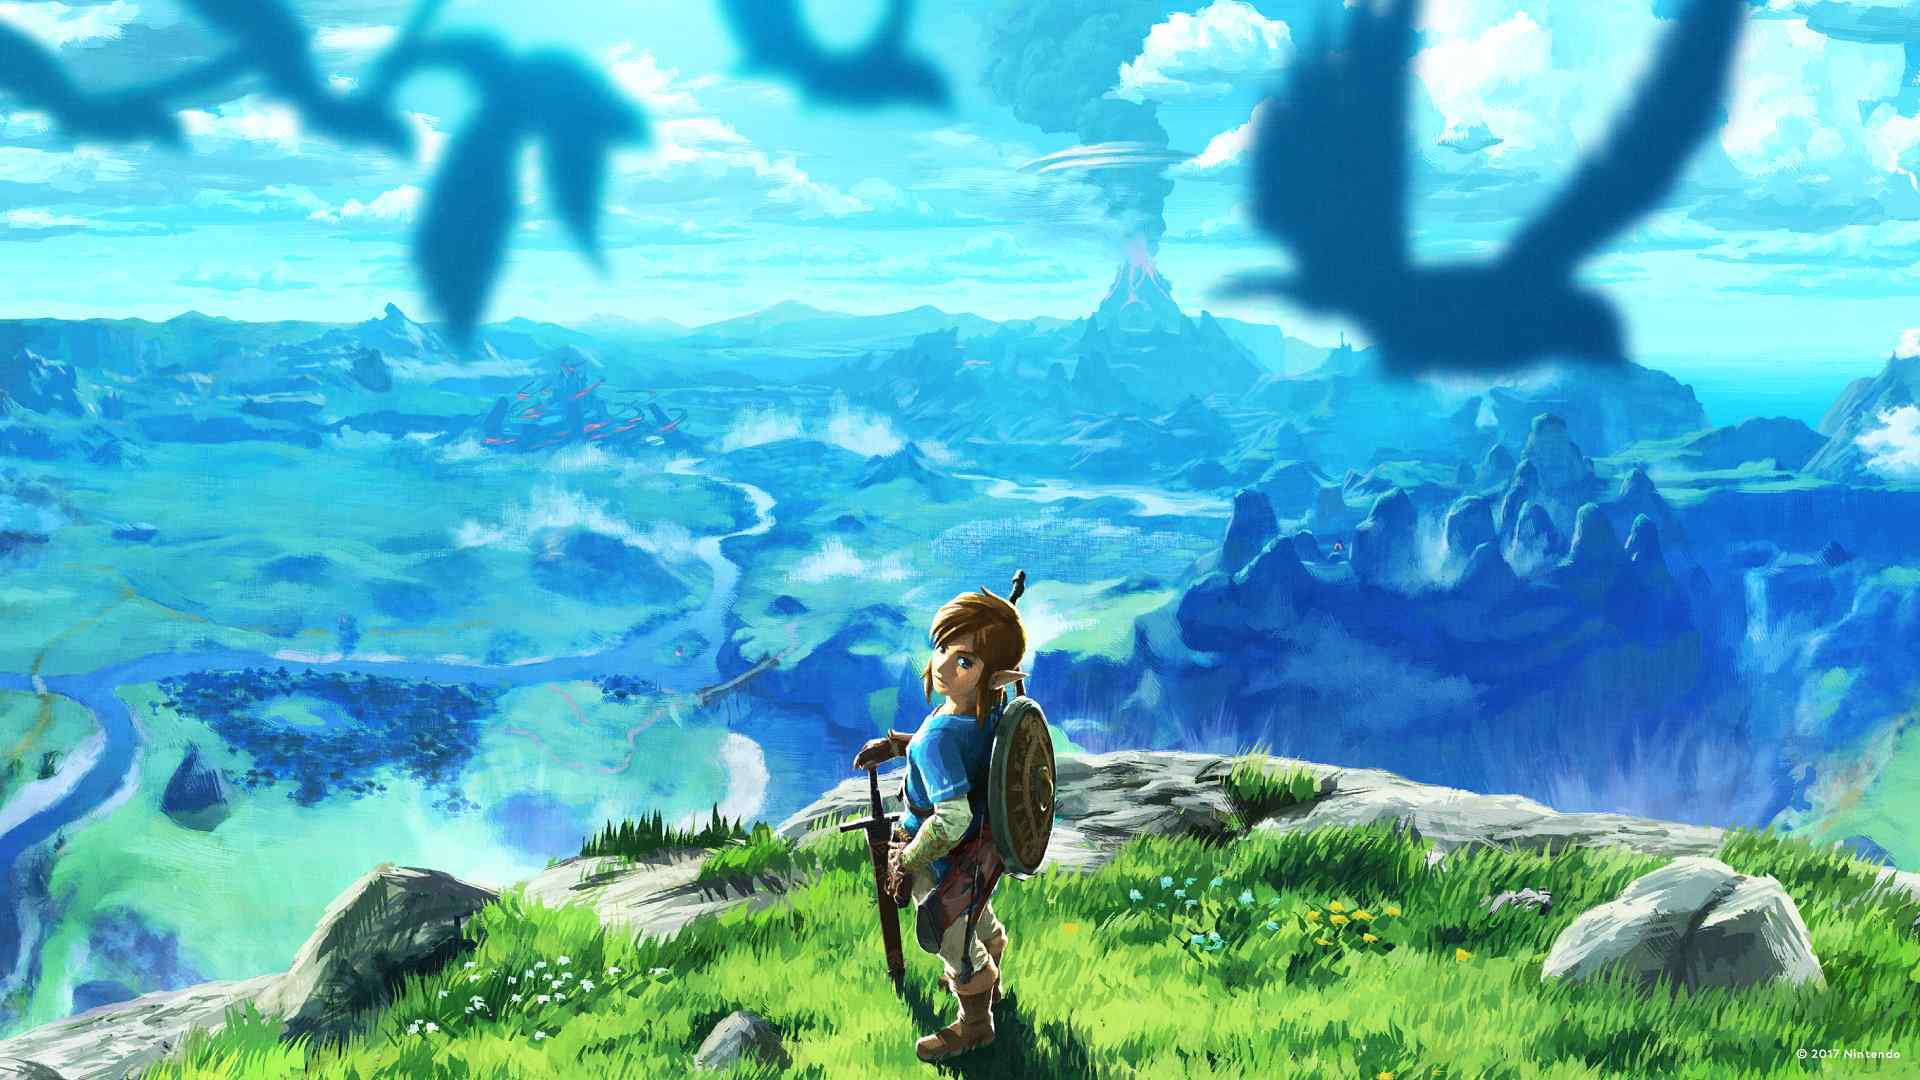 Nintendo Releases Tons of Wallpaper to Brighten Up Your Zoom Calls